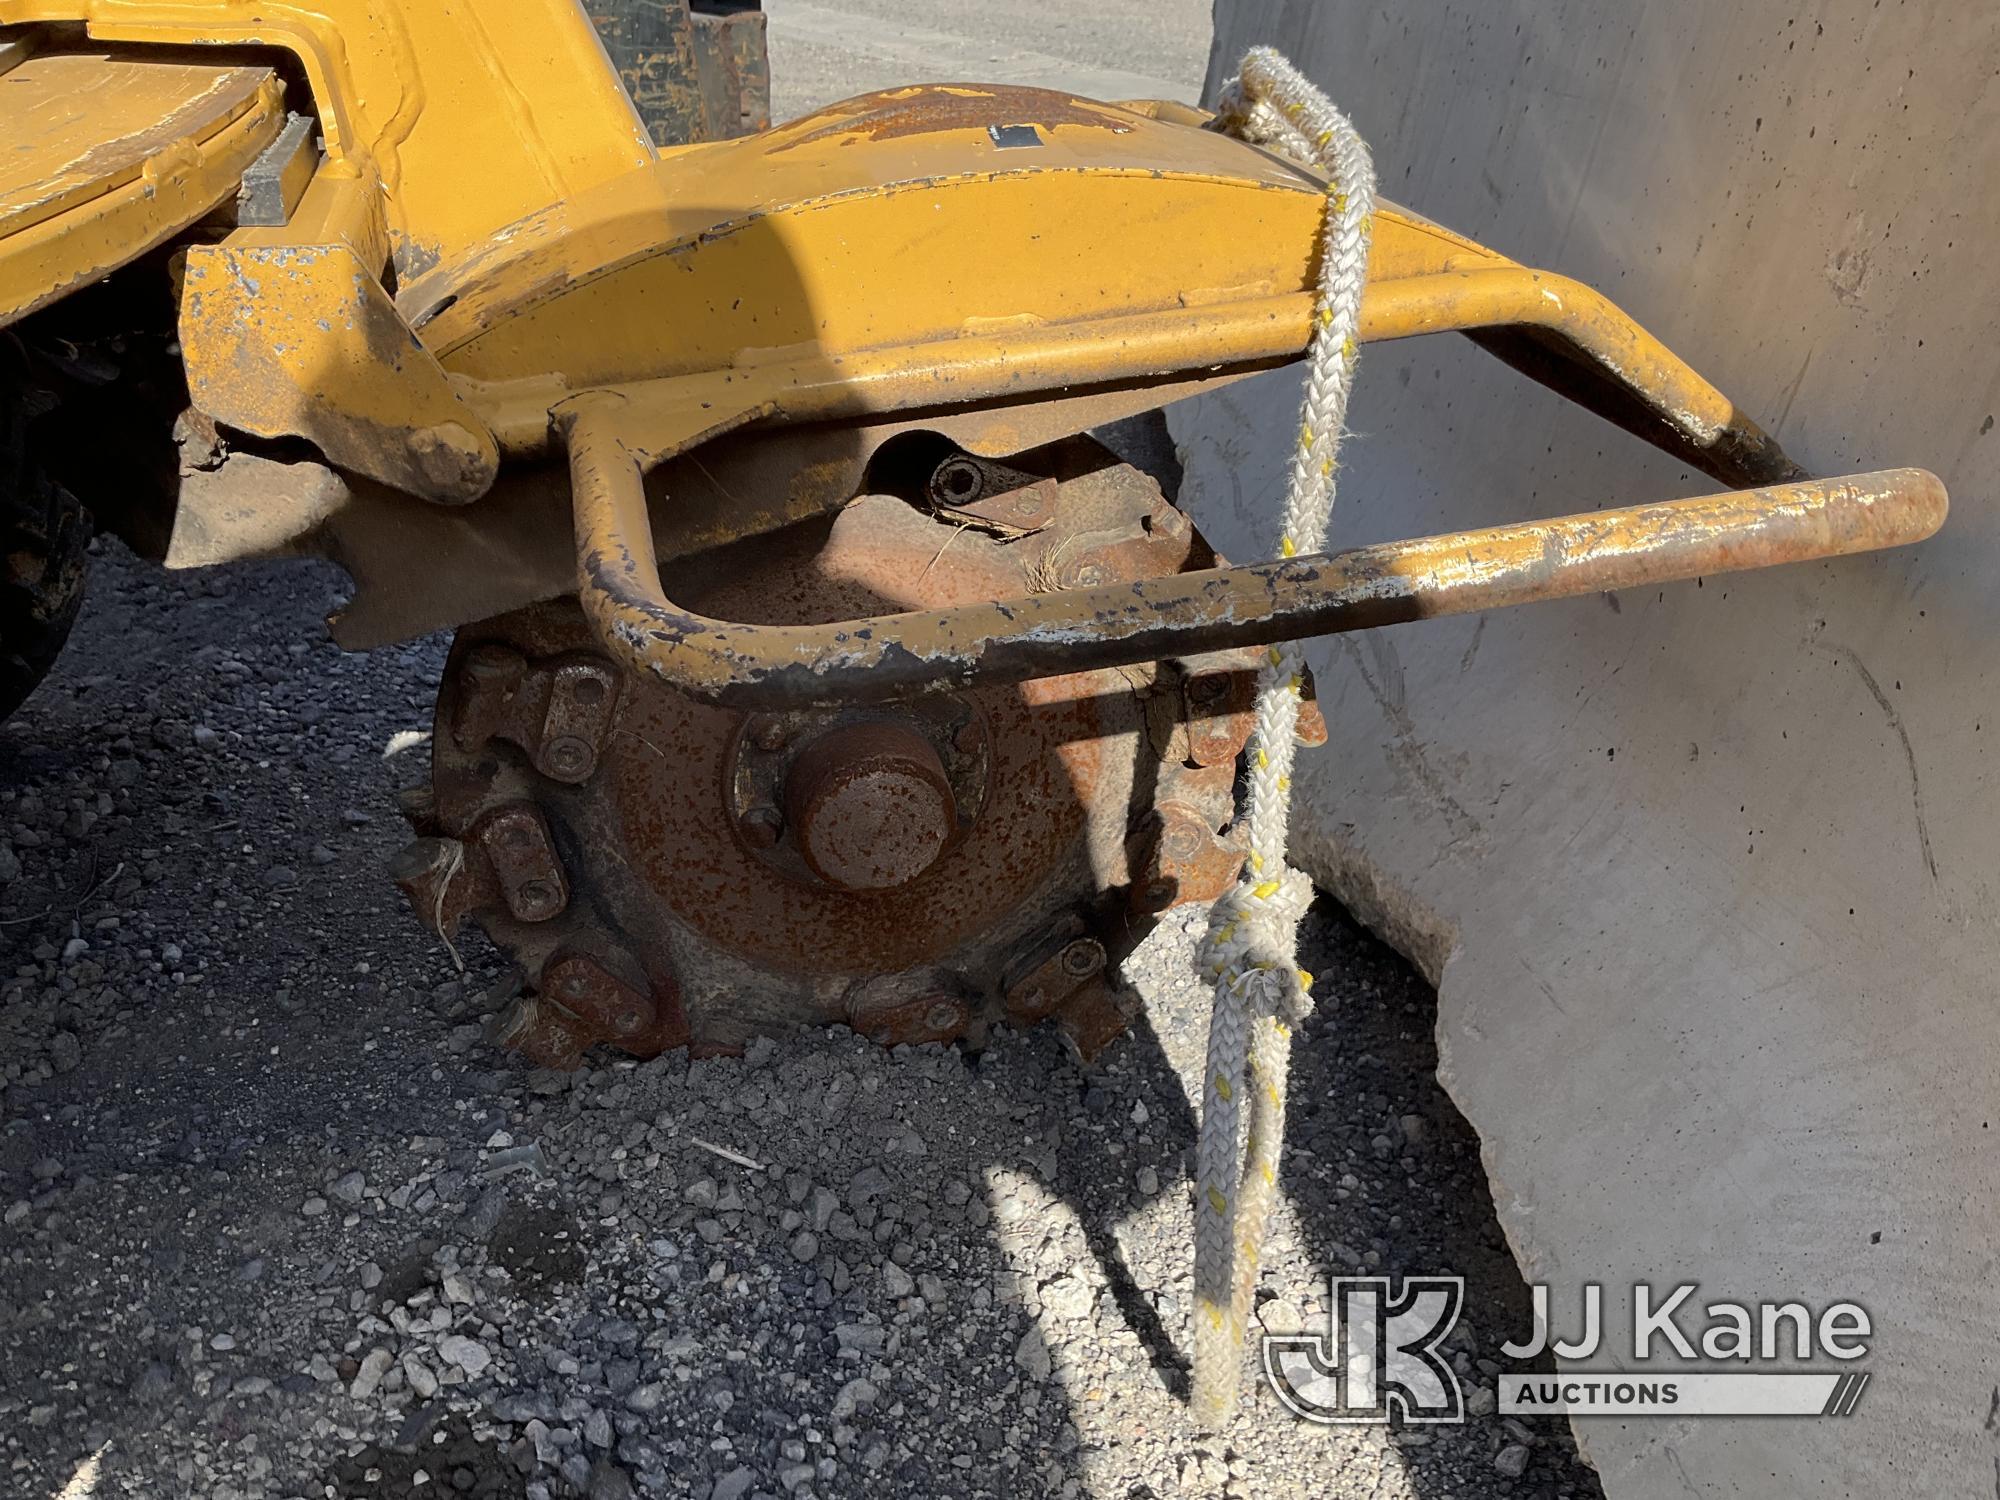 (Jurupa Valley, CA) 2014 Vermeer SC372 Stump Grinder Not Running, Missing Keys, Has Bad Tires